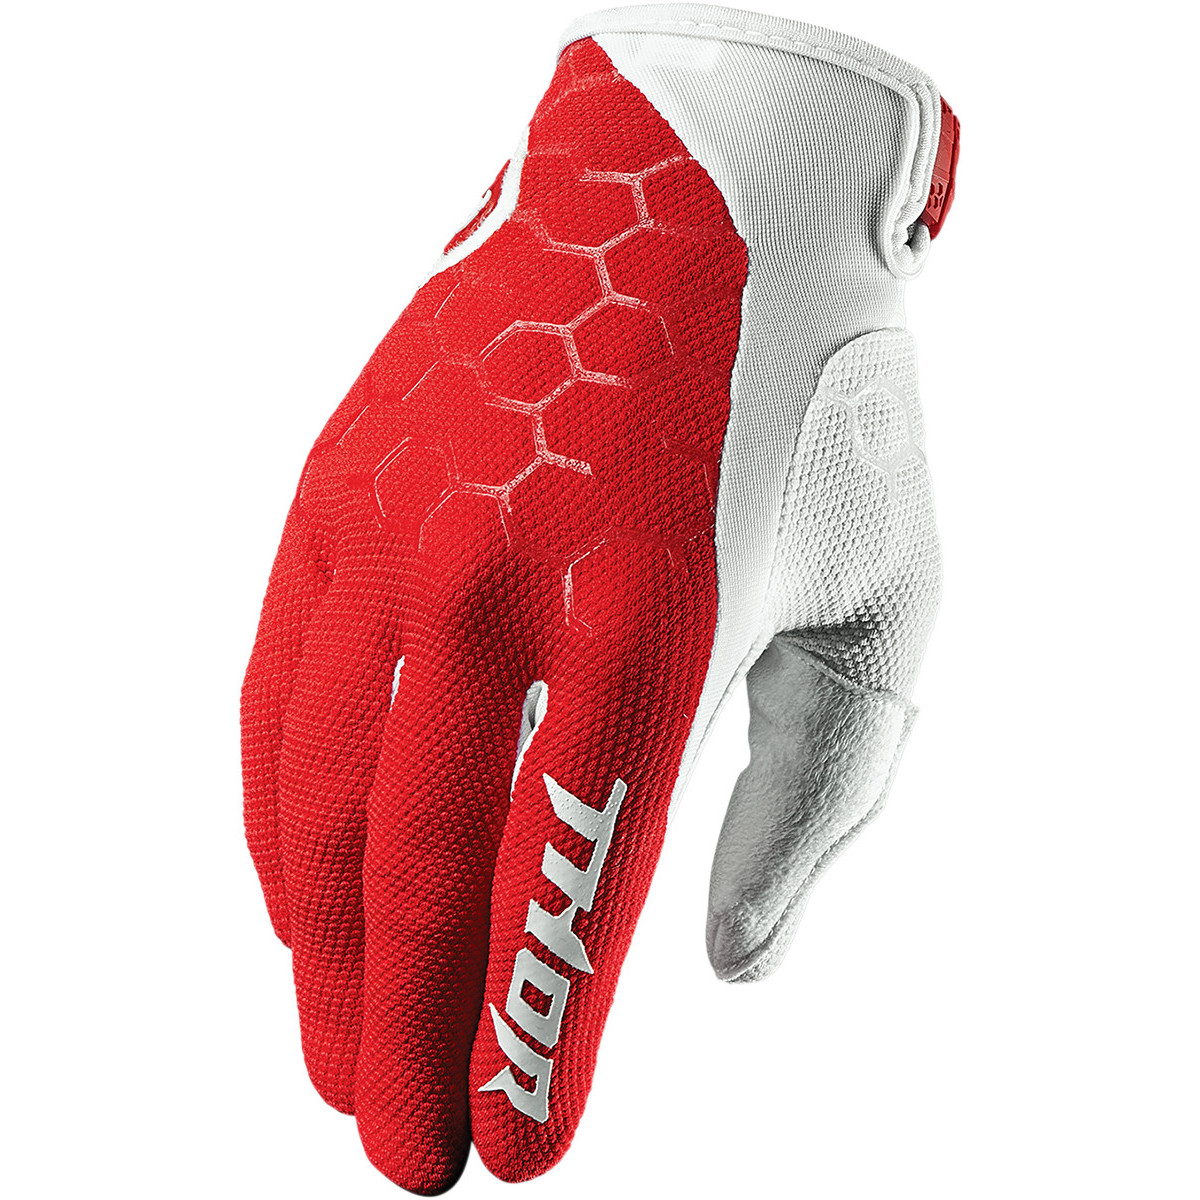 Thor Gloves Draft Indi - Red/White